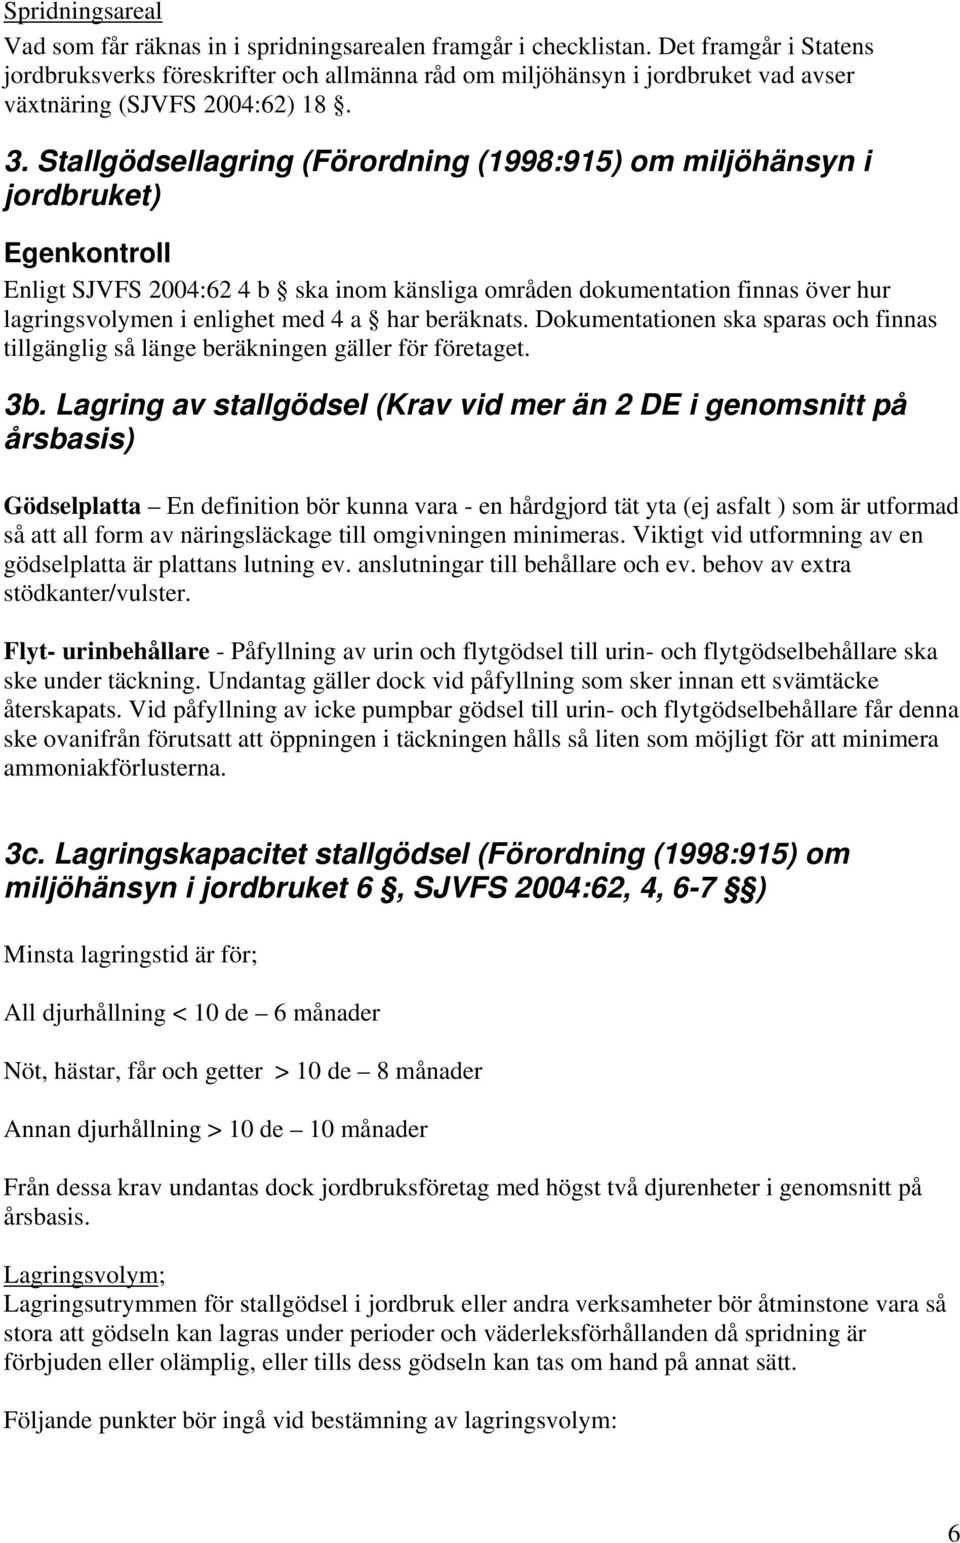 Stallgödsellagring (Förordning (1998:915) om miljöhänsyn i jordbruket) Egenkontroll Enligt SJVFS 2004:62 4 b ska inom känsliga områden dokumentation finnas över hur lagringsvolymen i enlighet med 4 a